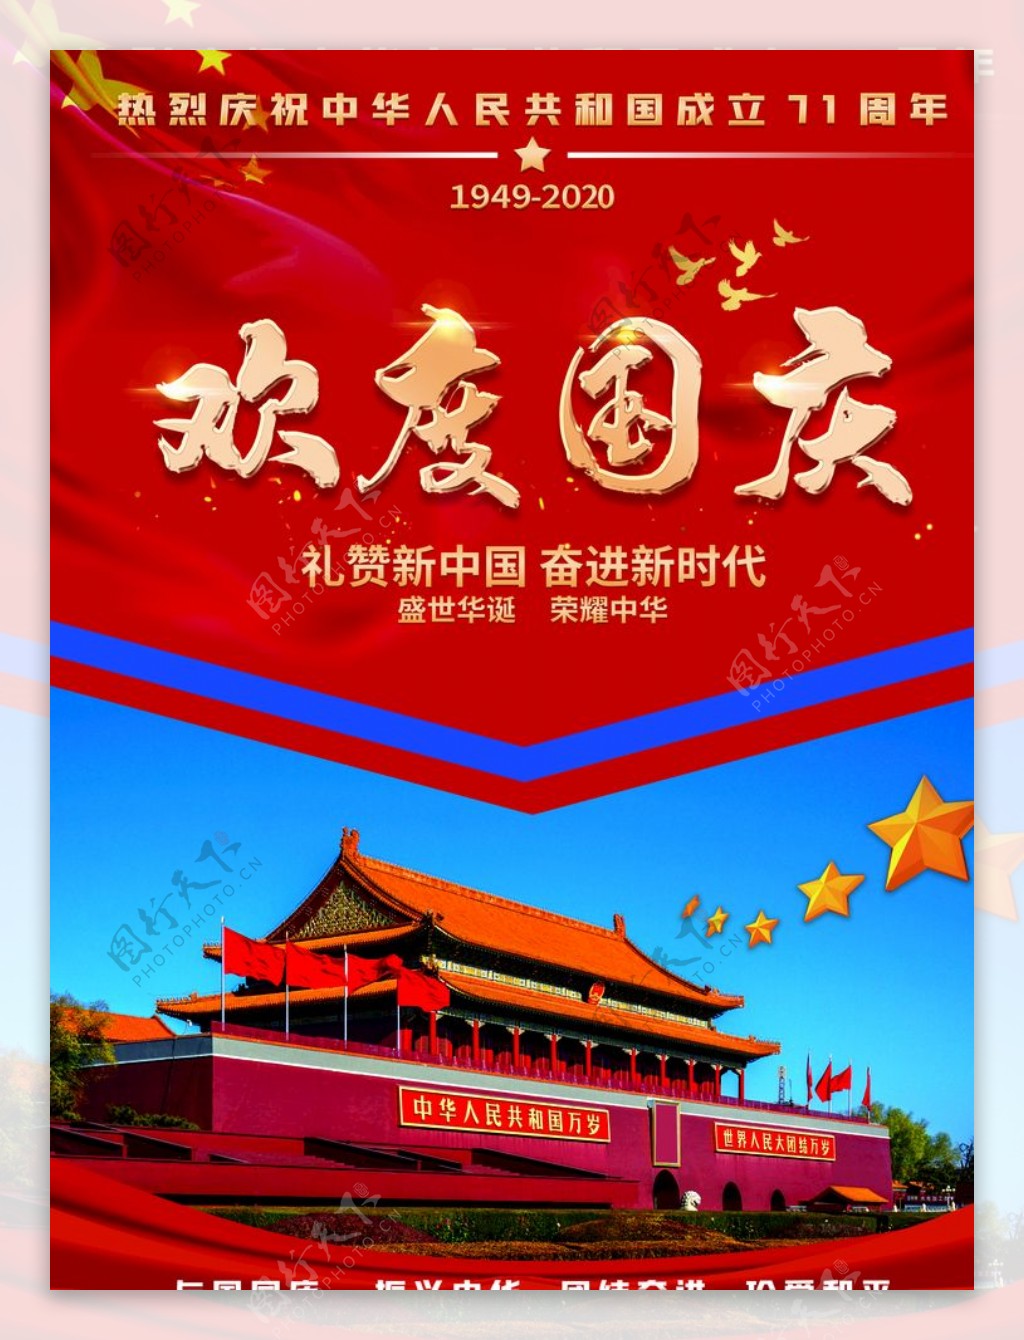 红色欢度中秋国庆促销海报